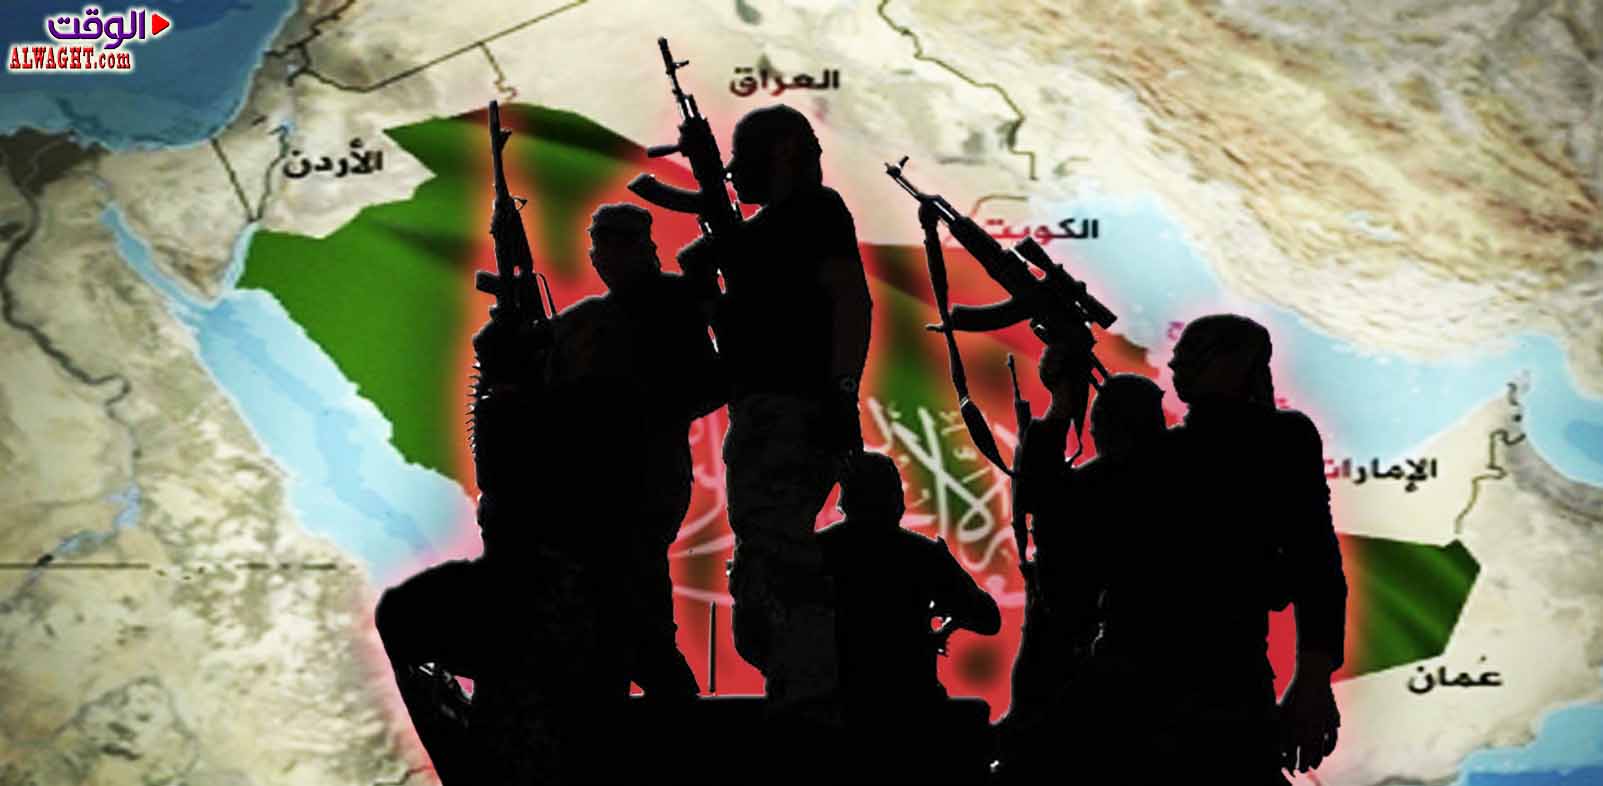 ويكليكس يكشف في حزمة وثائق مسربة جديدة دور الرياض في تمويل الارهاب داخل سوريا